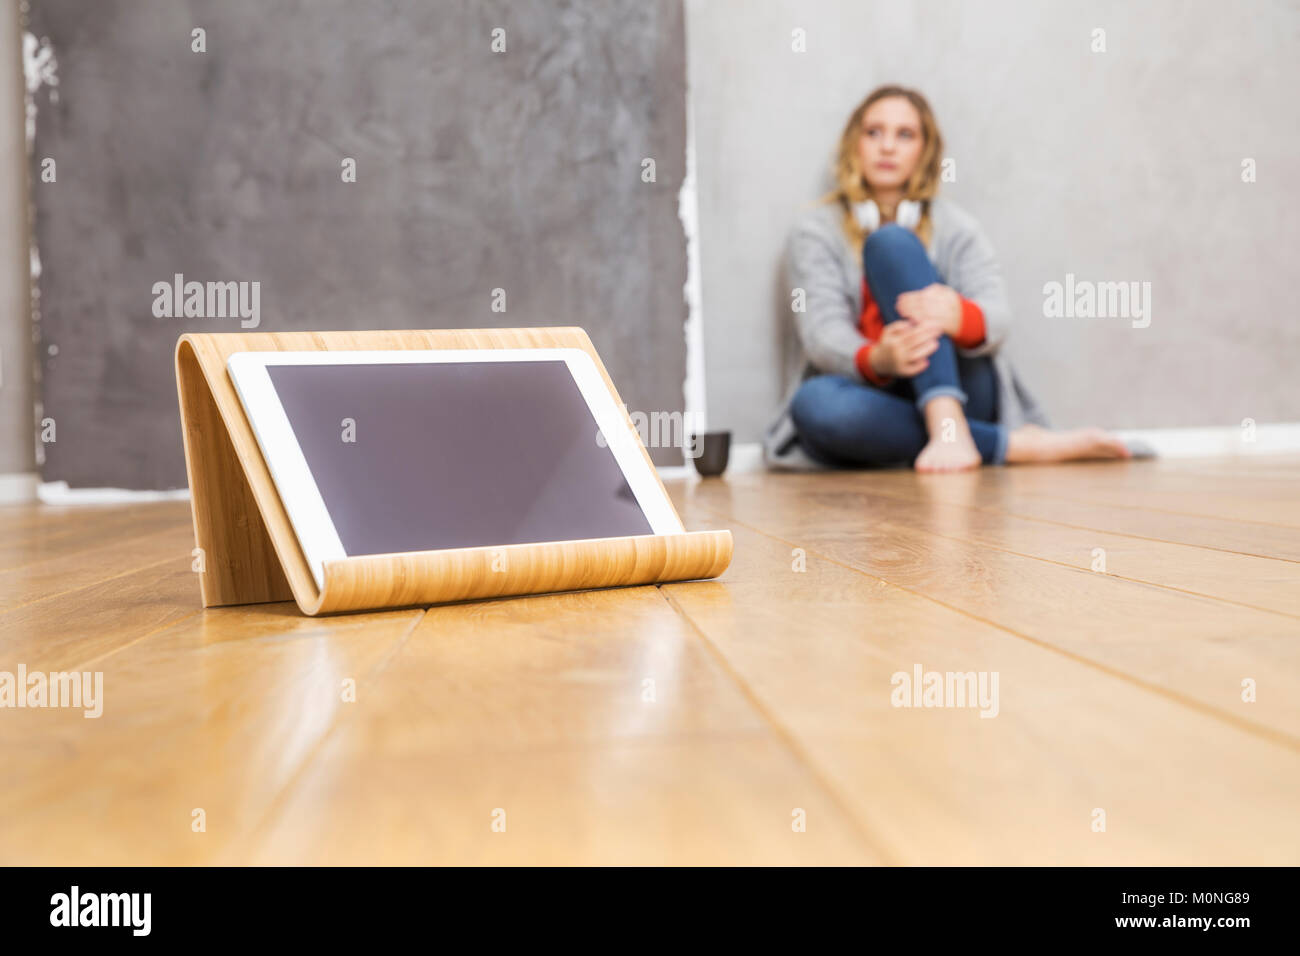 Tablet-PC Tablet auf dem Boden stehen mit jungen Frau im Hintergrund sitzen Stockfoto